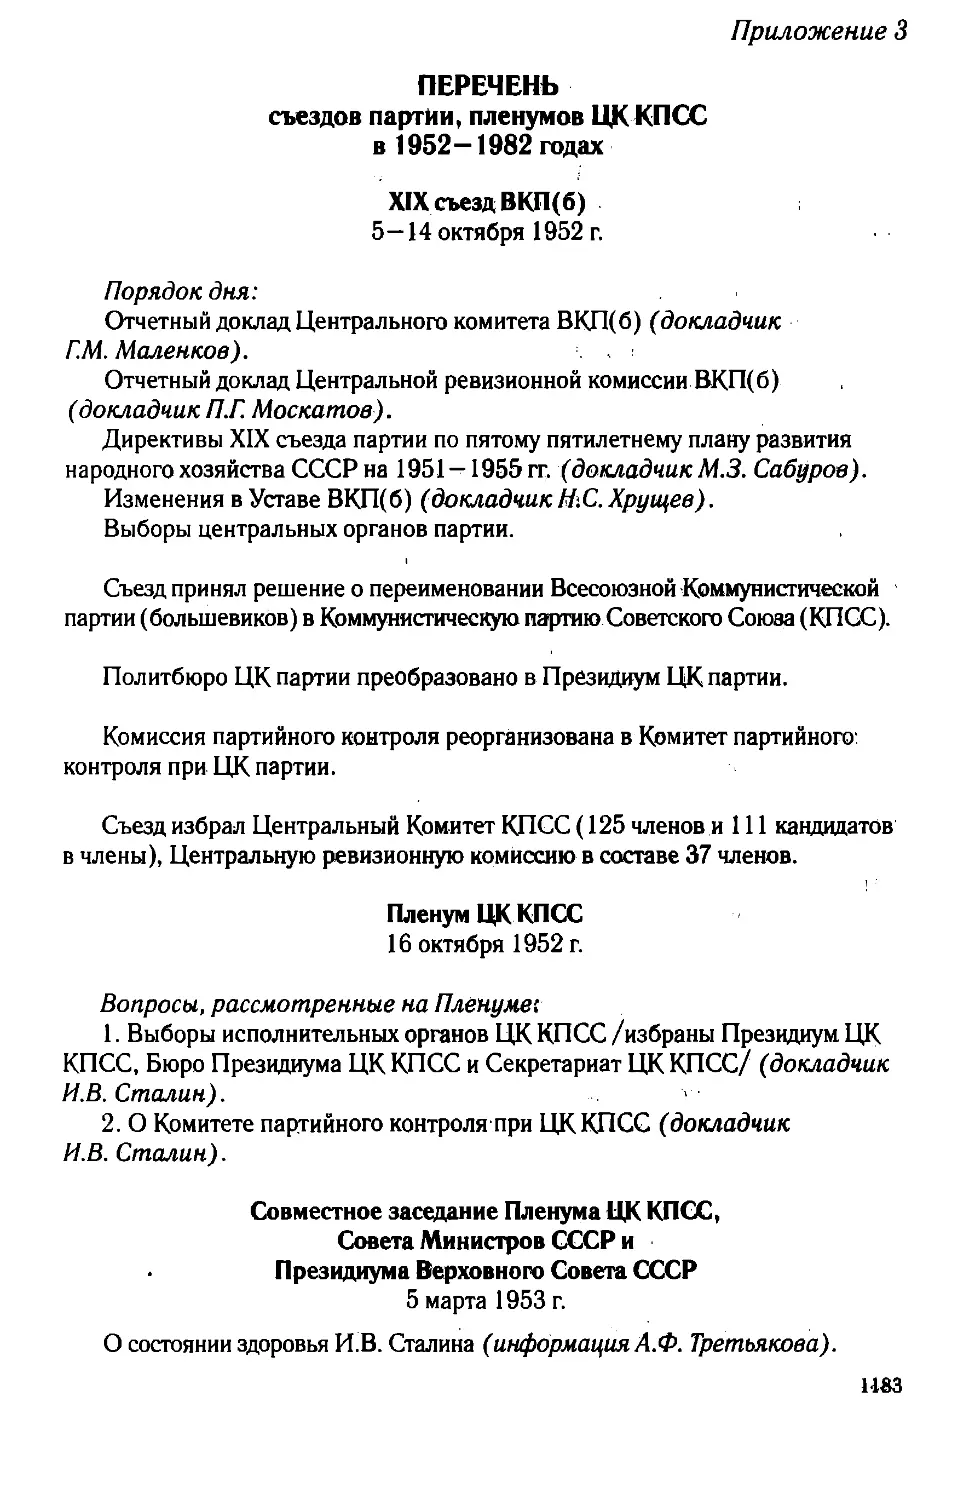 Приложение 3. Перечень съездов партии, пленумов ЦК КППС в 1952—1982 годах